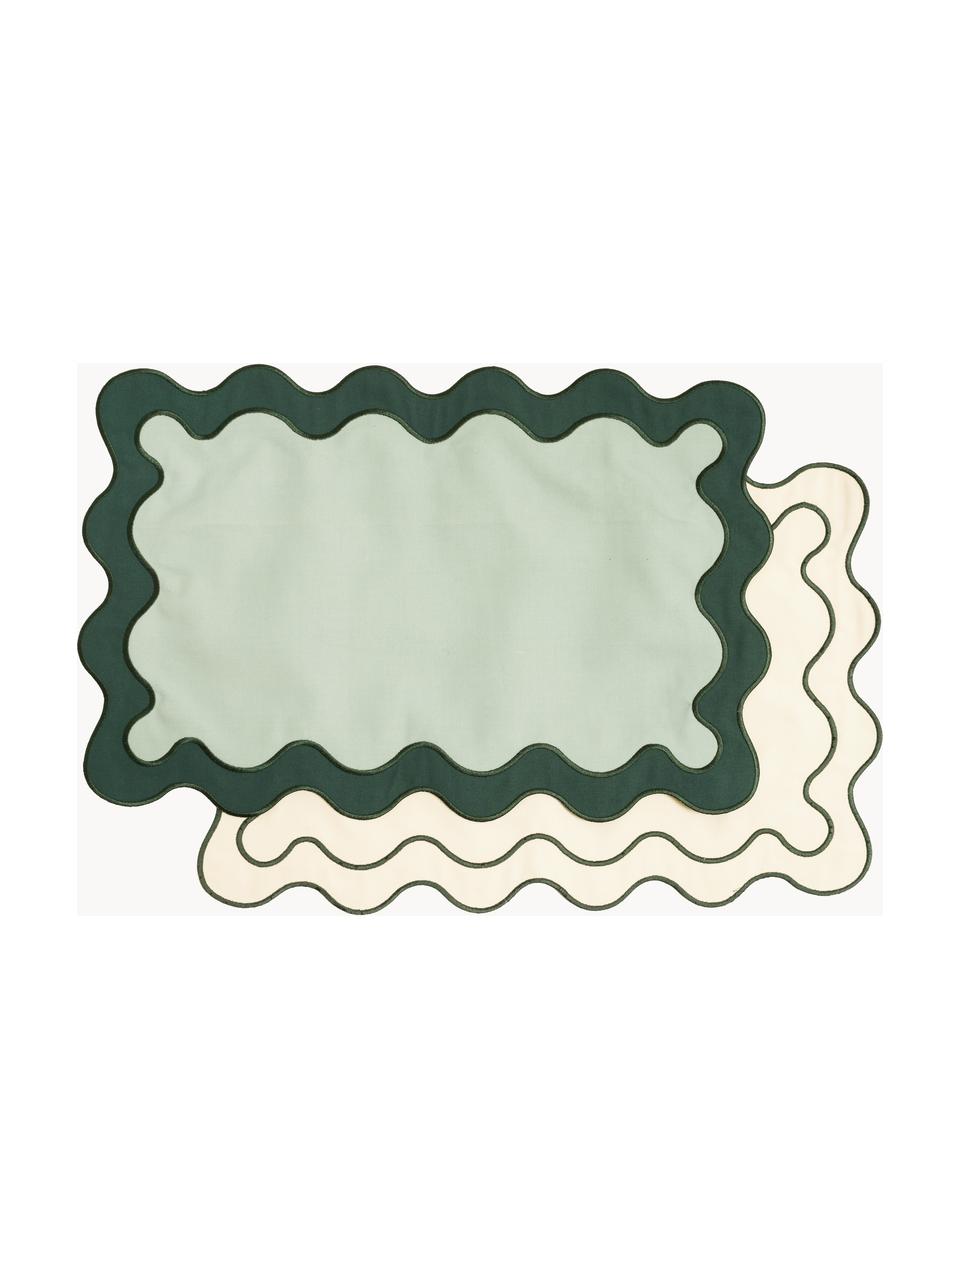 Tischsets Wave, 4er-Set, 65 % Polyester, 35 % Baumwolle, Grüntöne, Cremeweiss, B 35 x L 50 cm